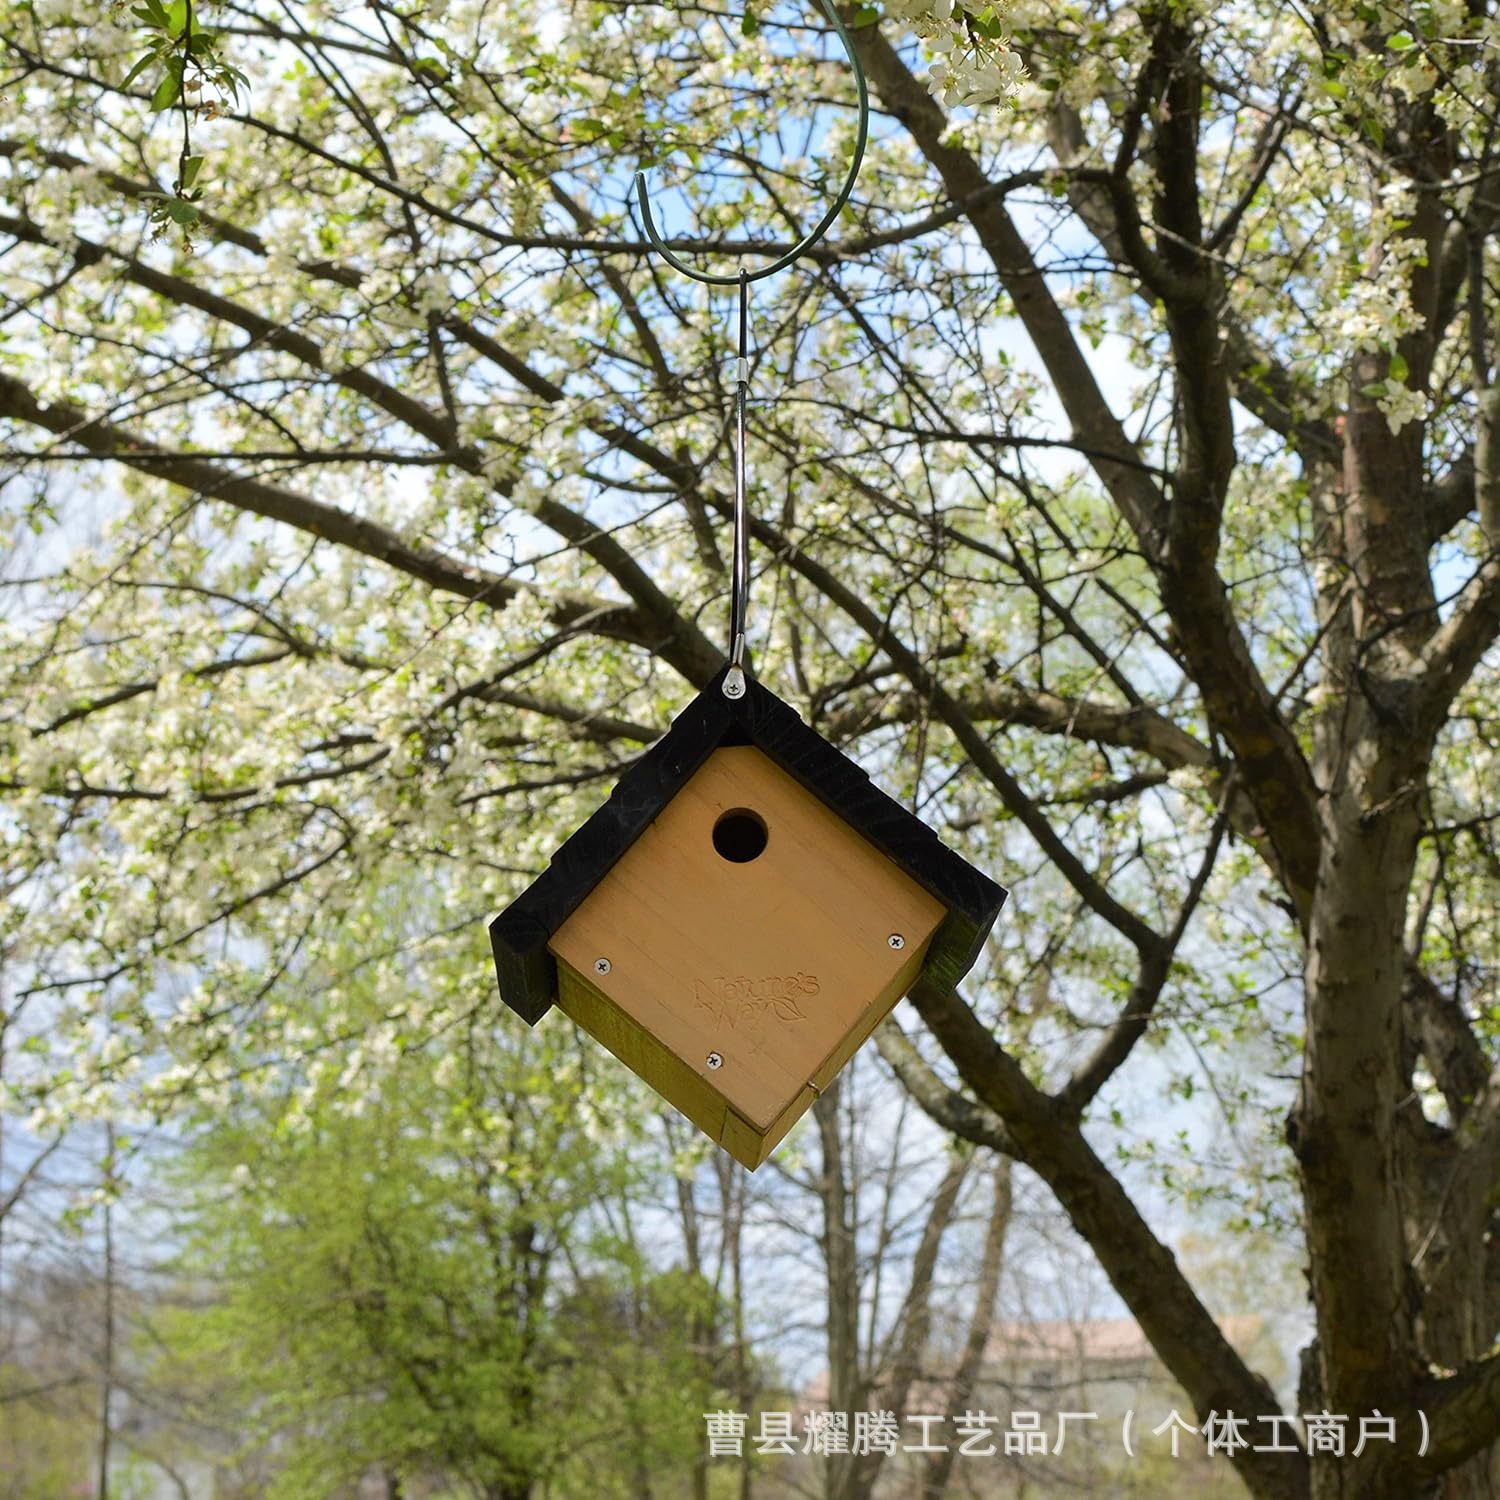 木制三角形鸟窝悬挂树上鸟喂食器可开盖庭院鸟舍装饰挂件栖息木窝